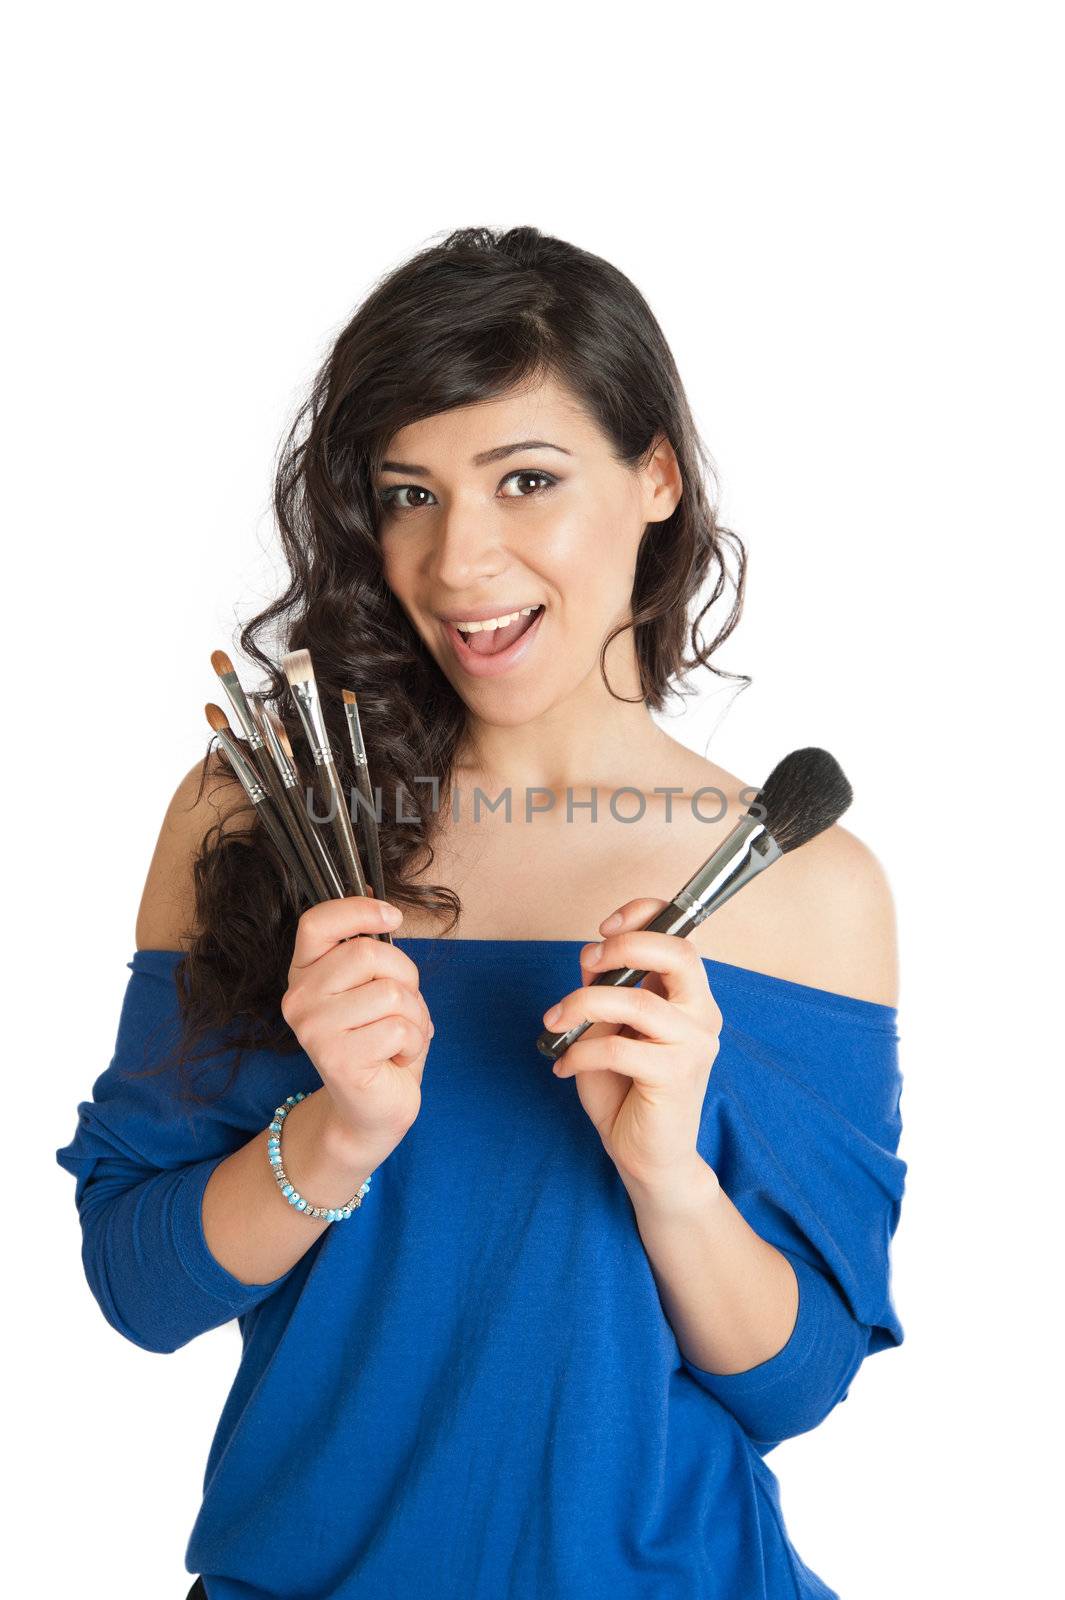 beautiful brunette holding a makeup brush by raduga21